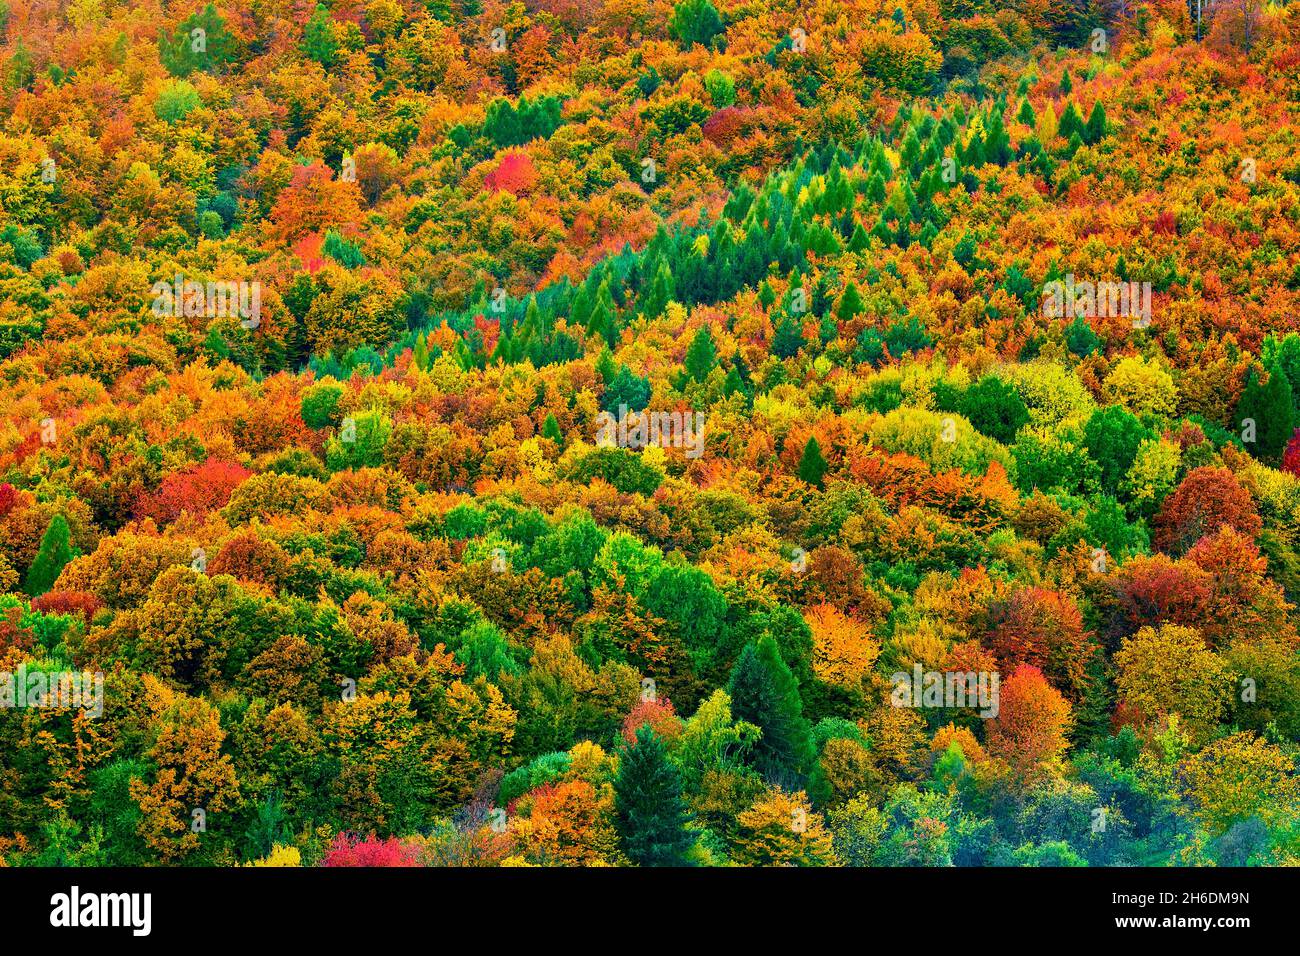 Landschaft, Herbst farbenfroher Mischwald in der Dämmerung. Textur von hell gefärbten Nadelbäumen und Laubbäumen. Dubrava, Slowakei. Stockfoto